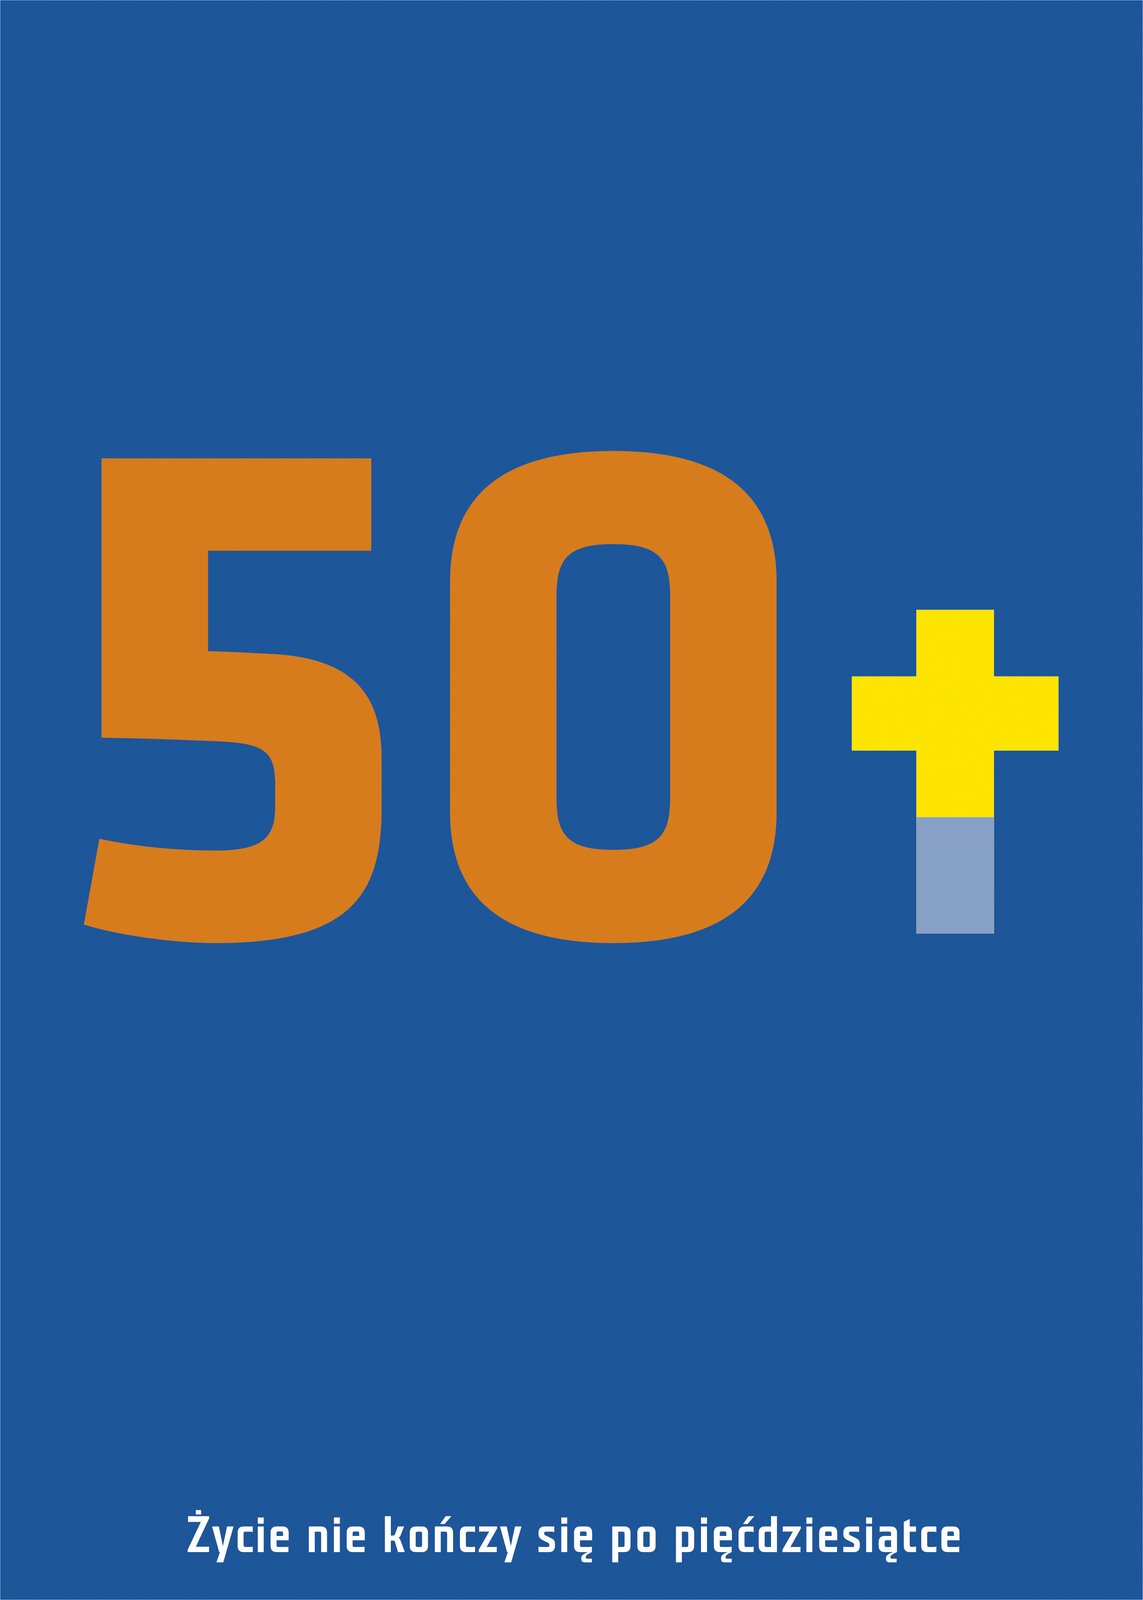 Ilustracja przedstawia plakat: „50+” wg. projektu Joanny Frydrychowicz‑Janiak i Krzysztofa Skrzypczyka. Ukazuje ona na niebieskim tle pomarańczowo‑żółty napis pięćdziesiąt plus. Na dole znajduje się biały tekst „Życie nie kończy się po pięćdziesiątce”.